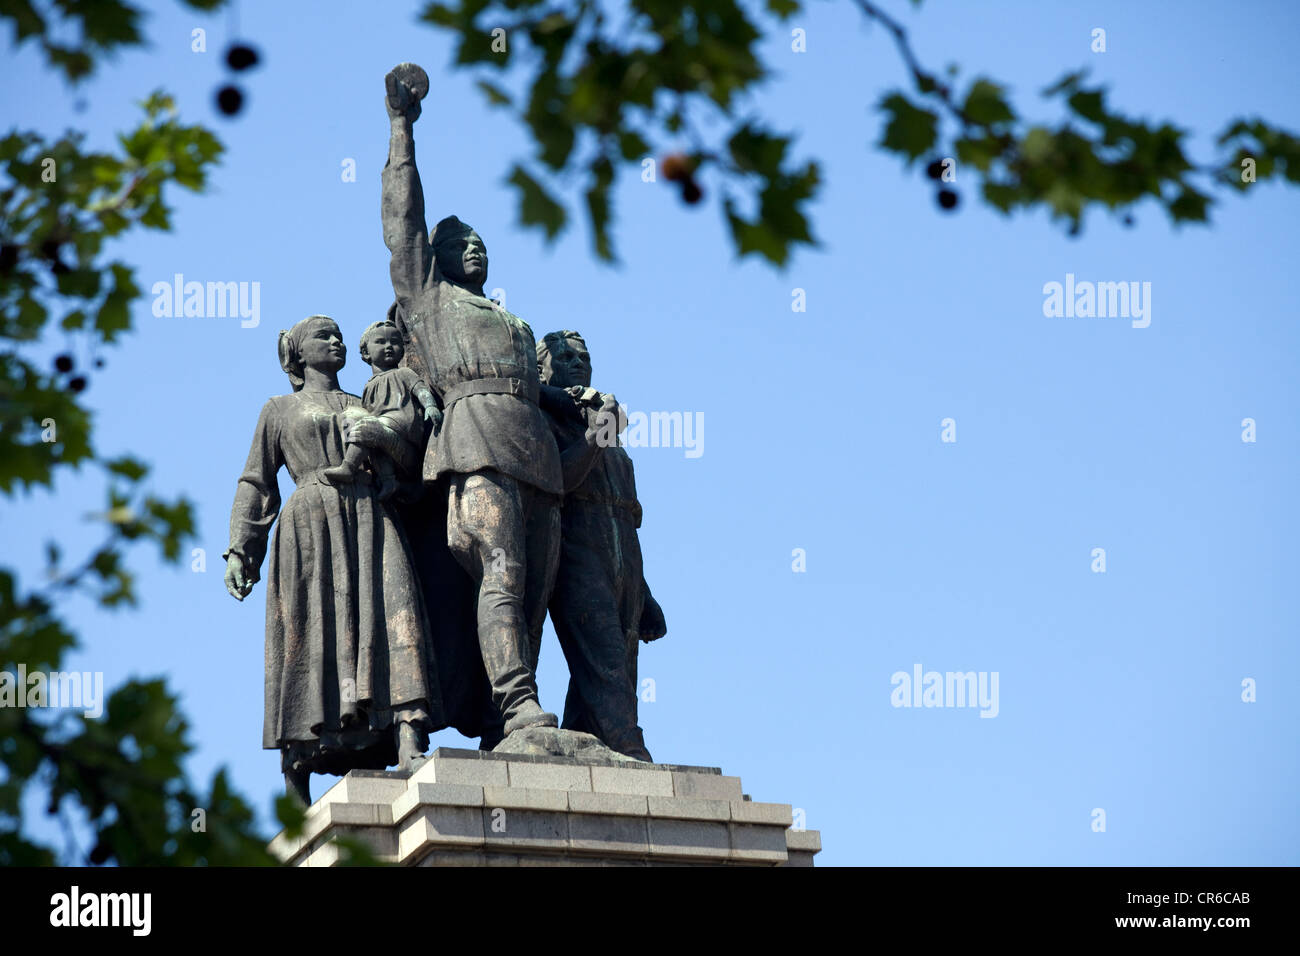 Monumento del ejército ruso en Sofía, Bulgaria Foto de stock